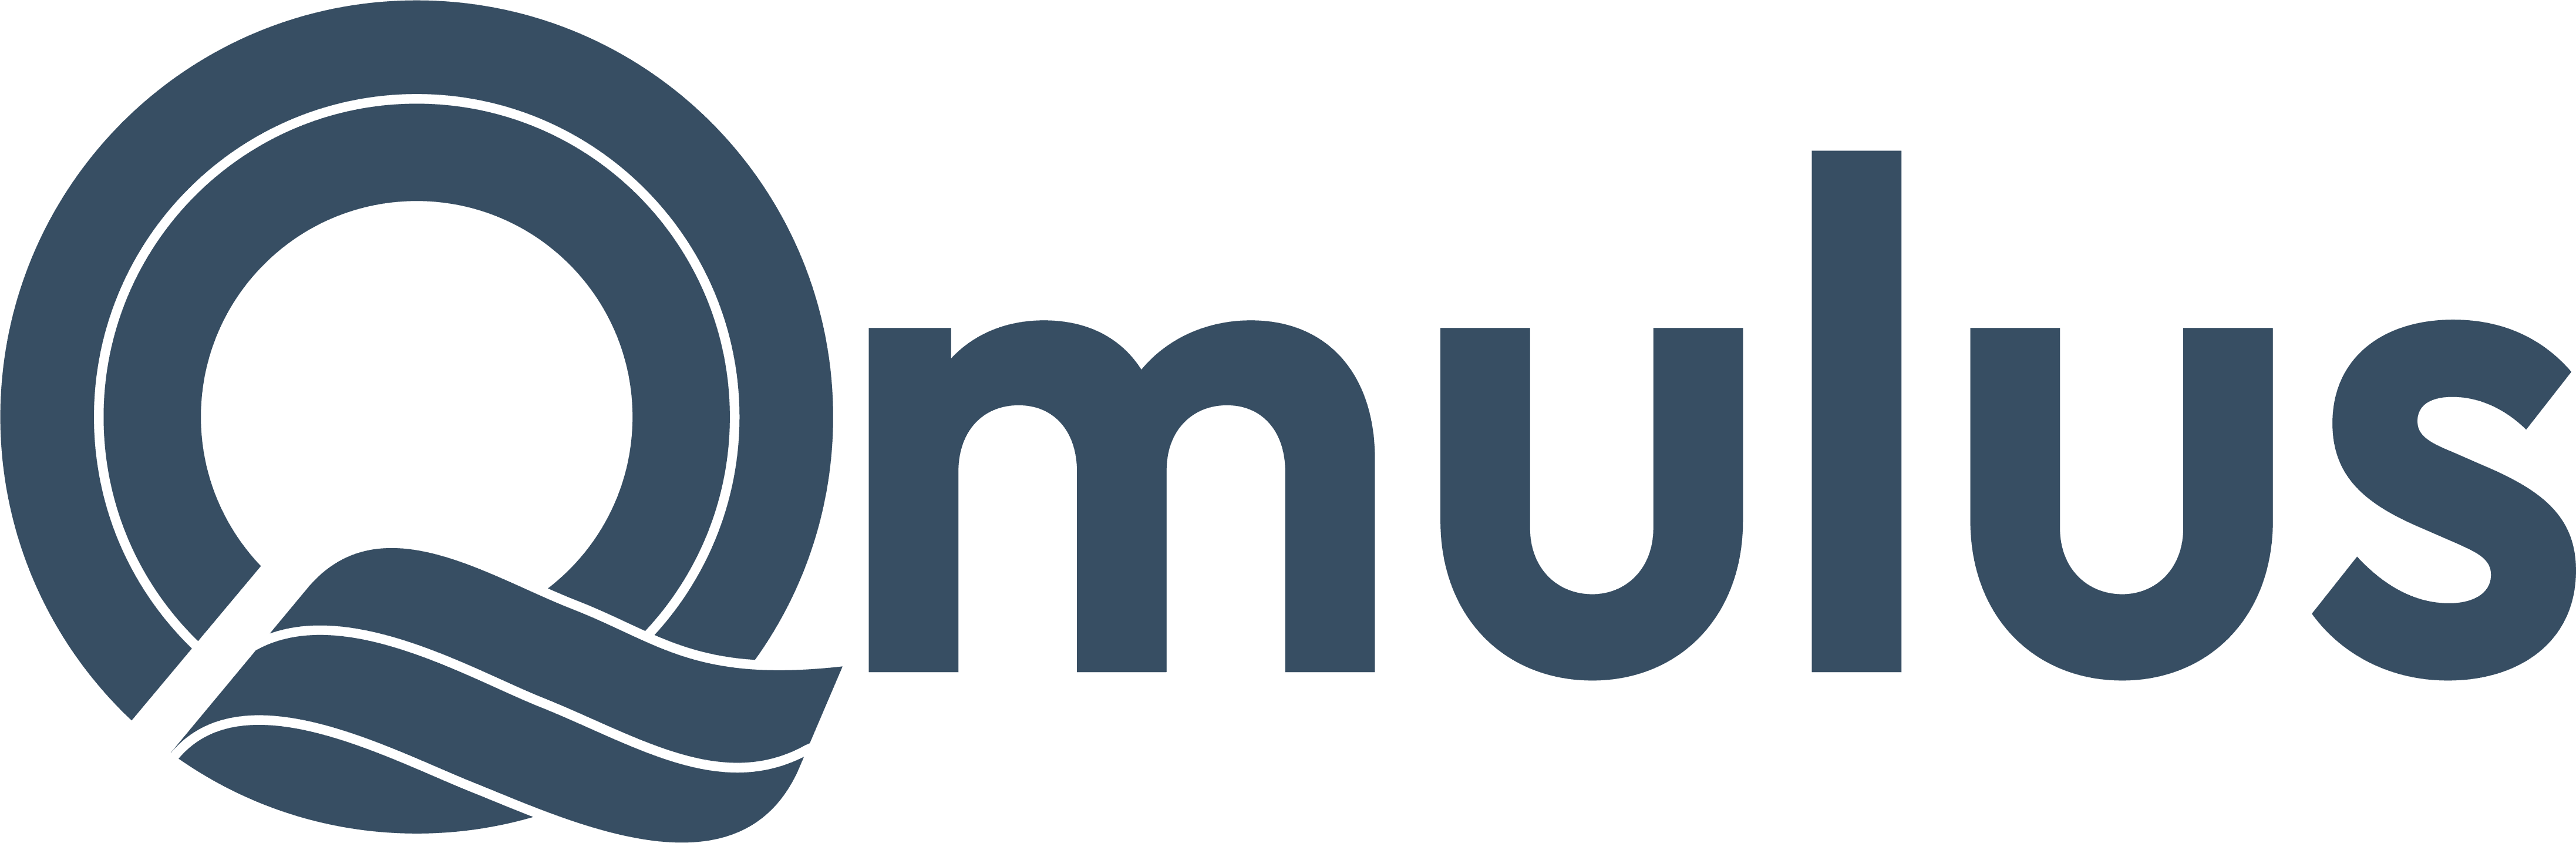 Qmulus Solutions